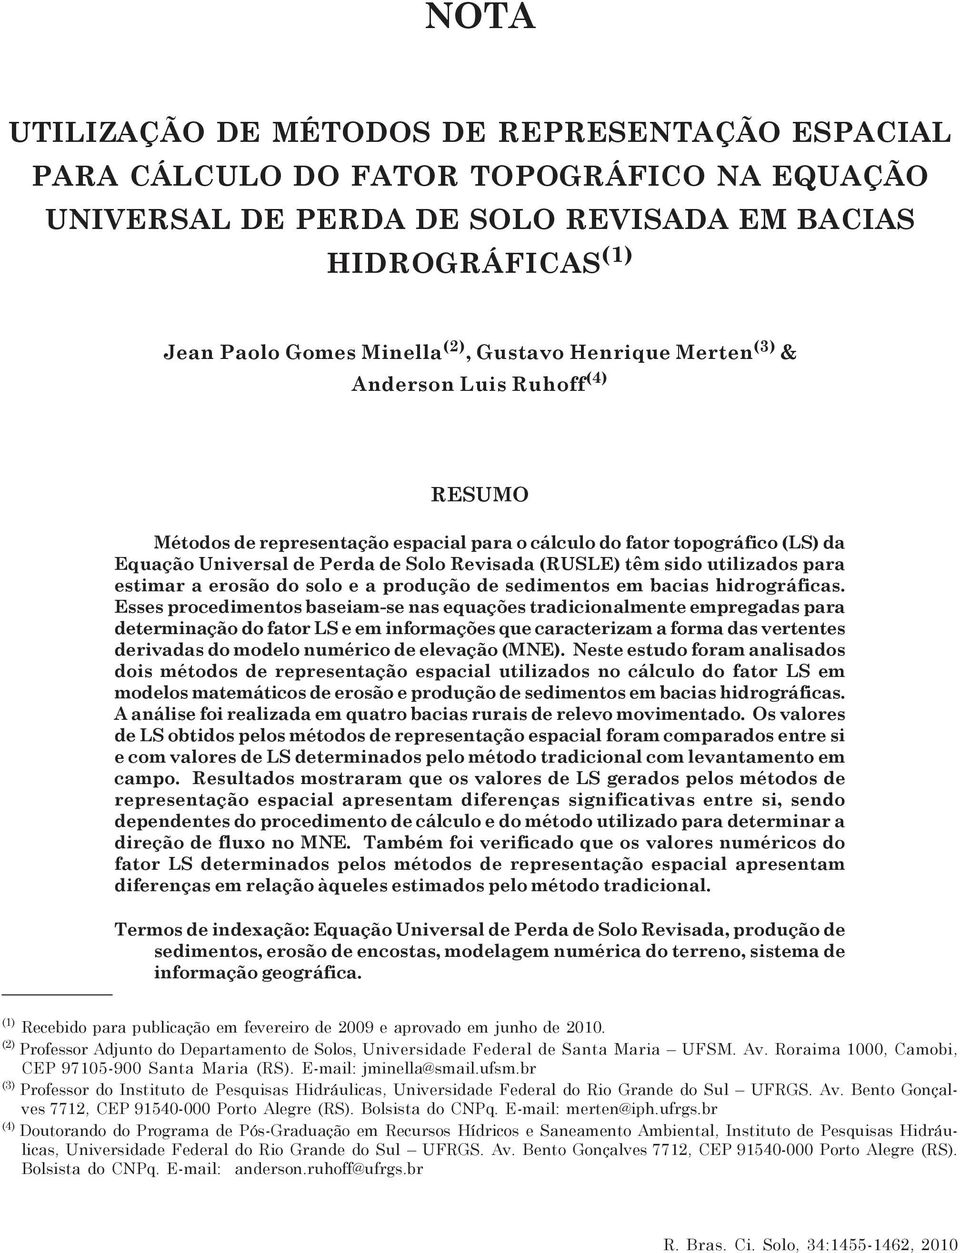 Gustavo Henrique Merten (3) & Anderson Luis Ruhoff (4) RESUMO Métodos de representação espacial para o cálculo do fator topográfico (LS) da Equação Universal de Perda de Solo Revisada (RUSLE) têm